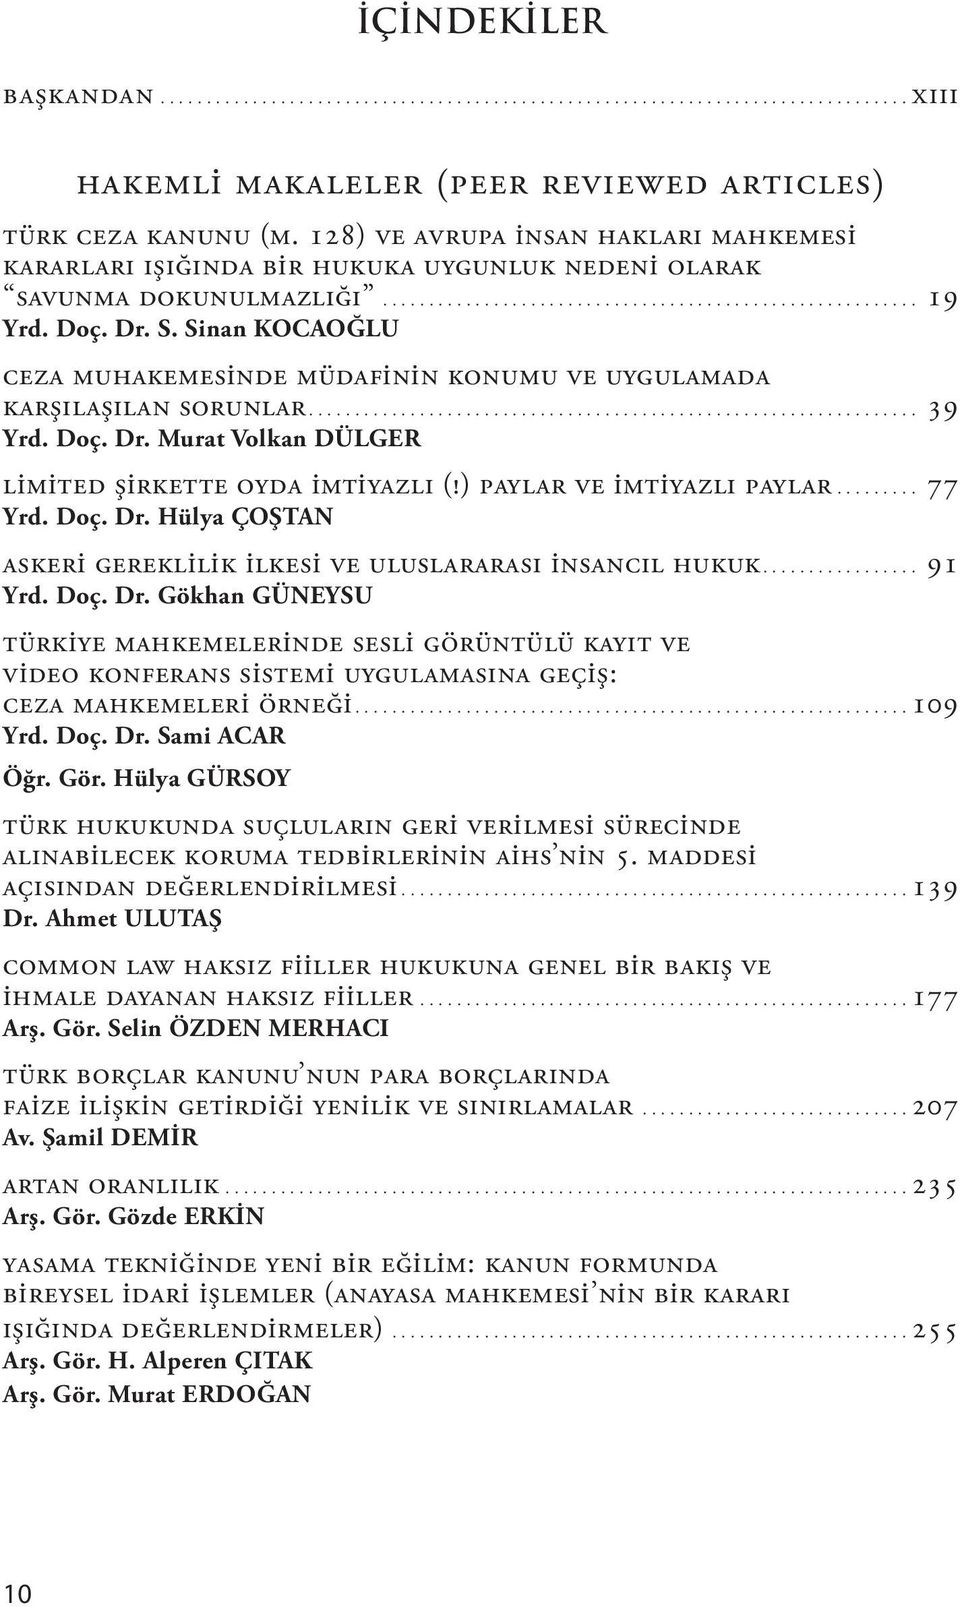 Doç. Dr. Murat Volkan DÜLGER Limited Şirkette Oyda İmtiyazlı (!) Paylar ve İmtiyazlı Paylar 77 Yrd. Doç. Dr. Hülya ÇOŞTAN Askeri Gereklilik İlkesi Ve Uluslararası İnsancıl Hukuk 91 Yrd. Doç. Dr. Gökhan GÜNEYSU Türkiye Mahkemelerinde Sesli Görüntülü Kayıt ve Video Konferans Sistemi Uygulamasına Geçiş: Ceza Mahkemeleri Örneği 109 Yrd.